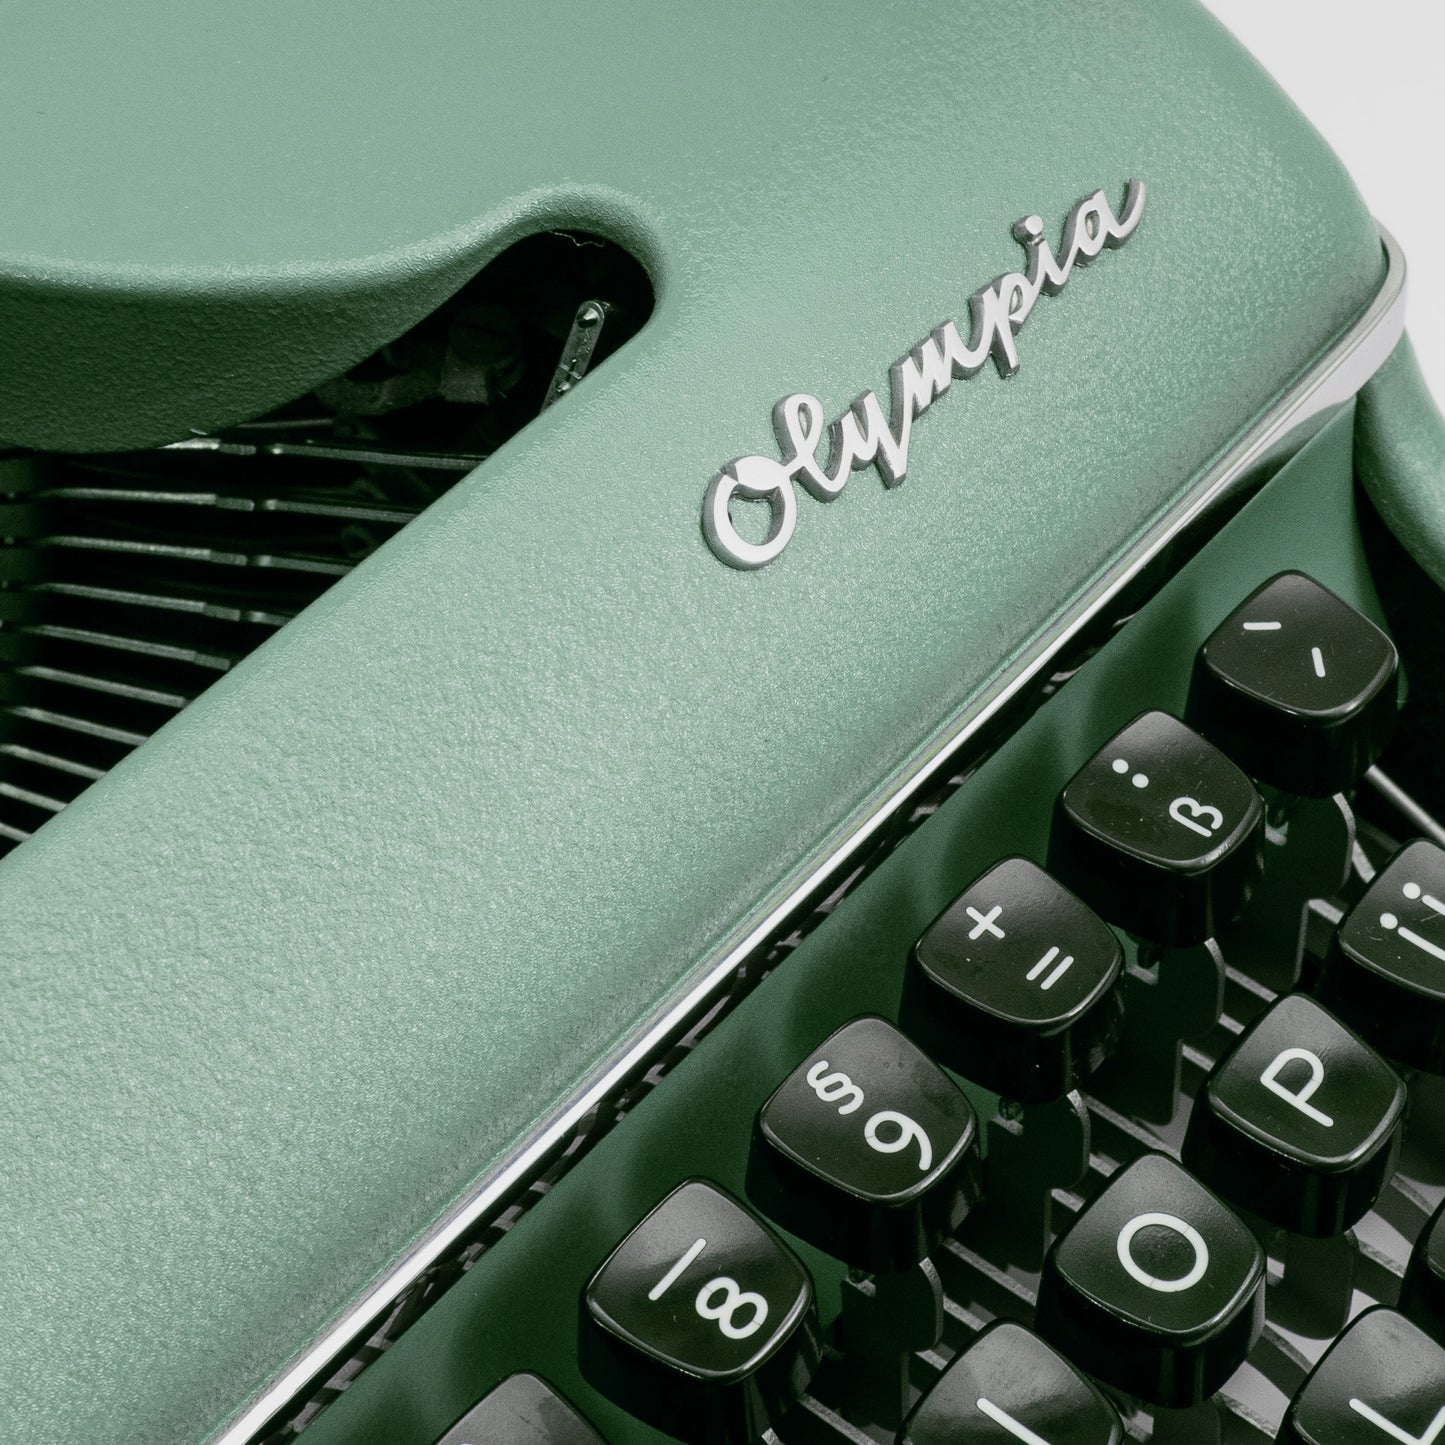 Vintage Typewriter Olympia SM2, Sage Green